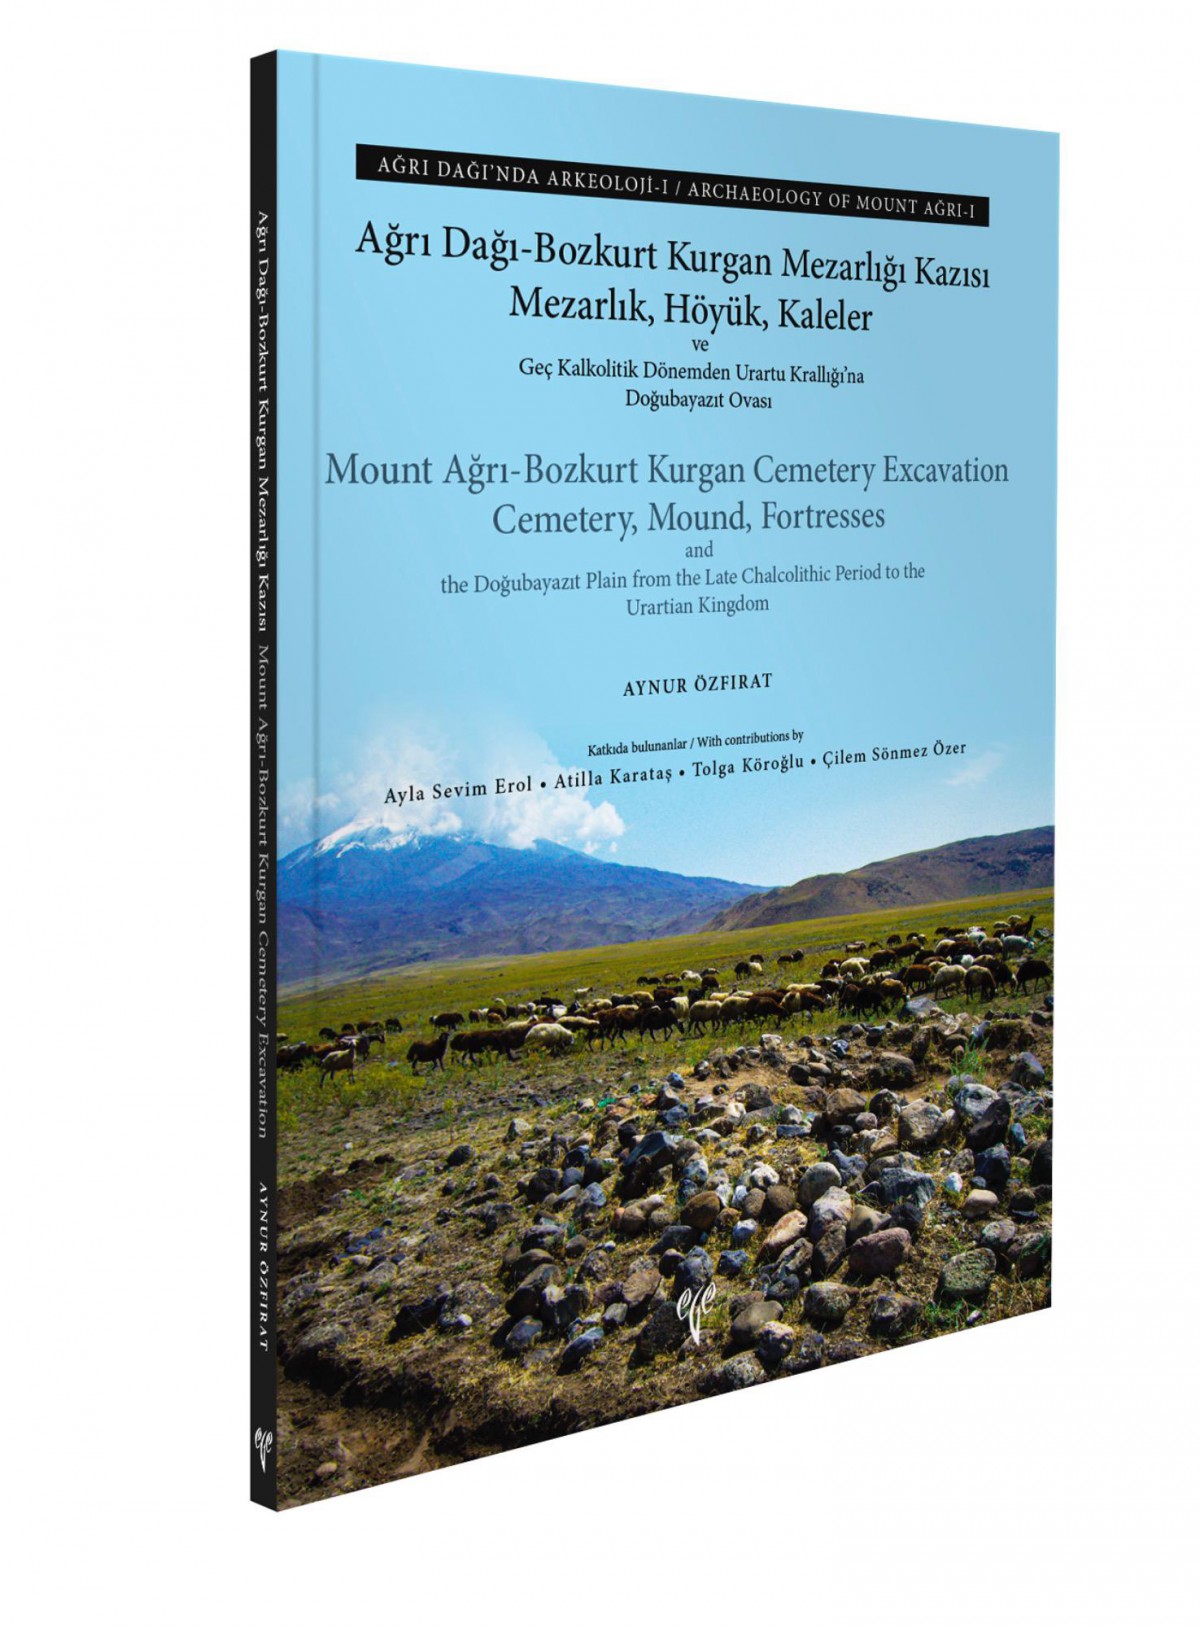 Mount Ağrı-Bozkurt Kurgan Cemetery Excavation - Archaeology of Mount Ağrı I